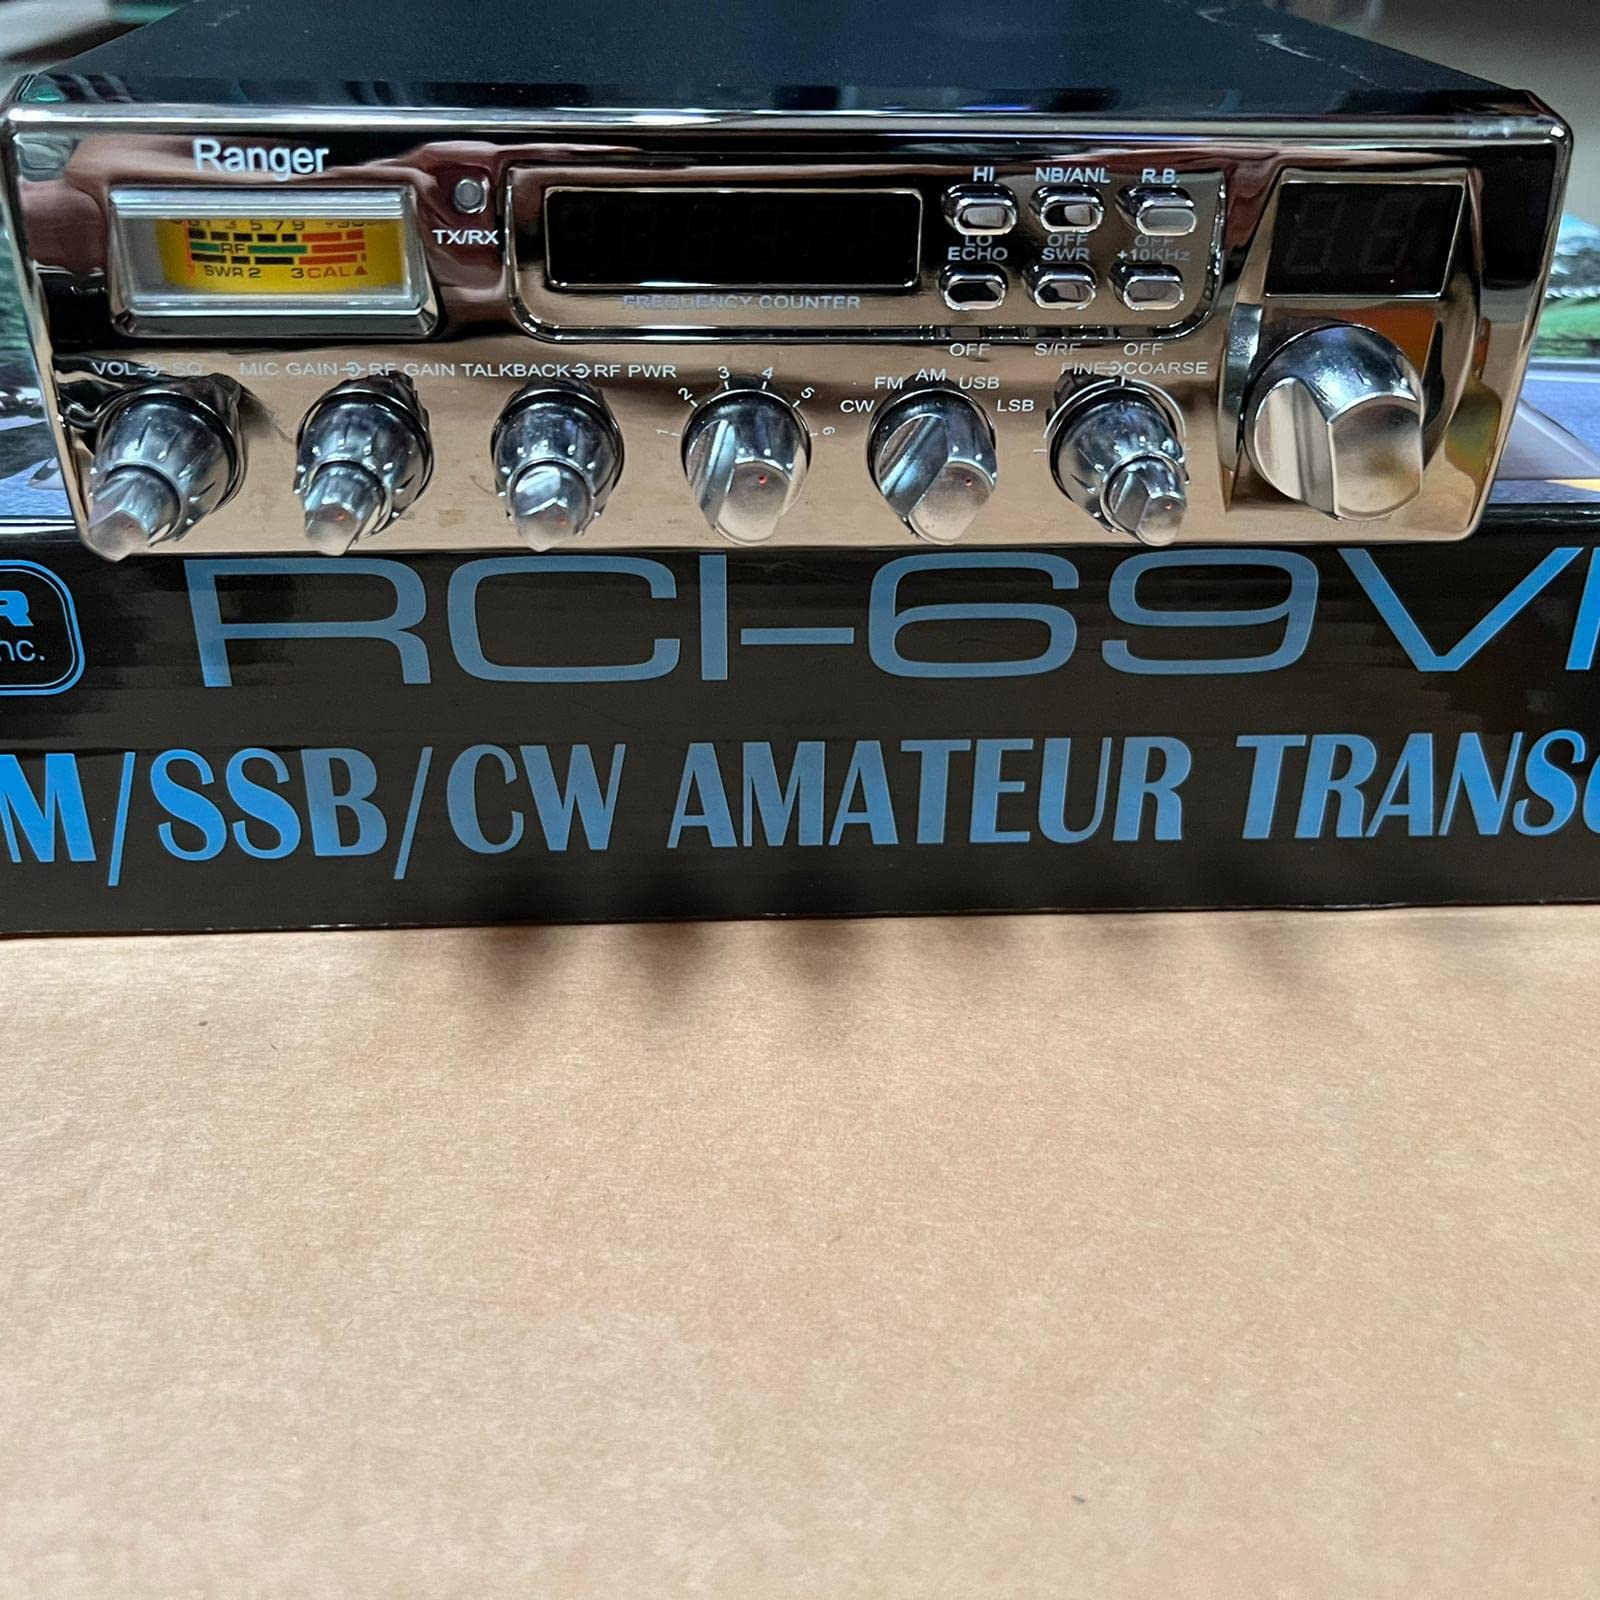 RCI-69VHP 80+ Watts SSB/AM/FM/CW 10 Meter Mobile Amateur Transceiver